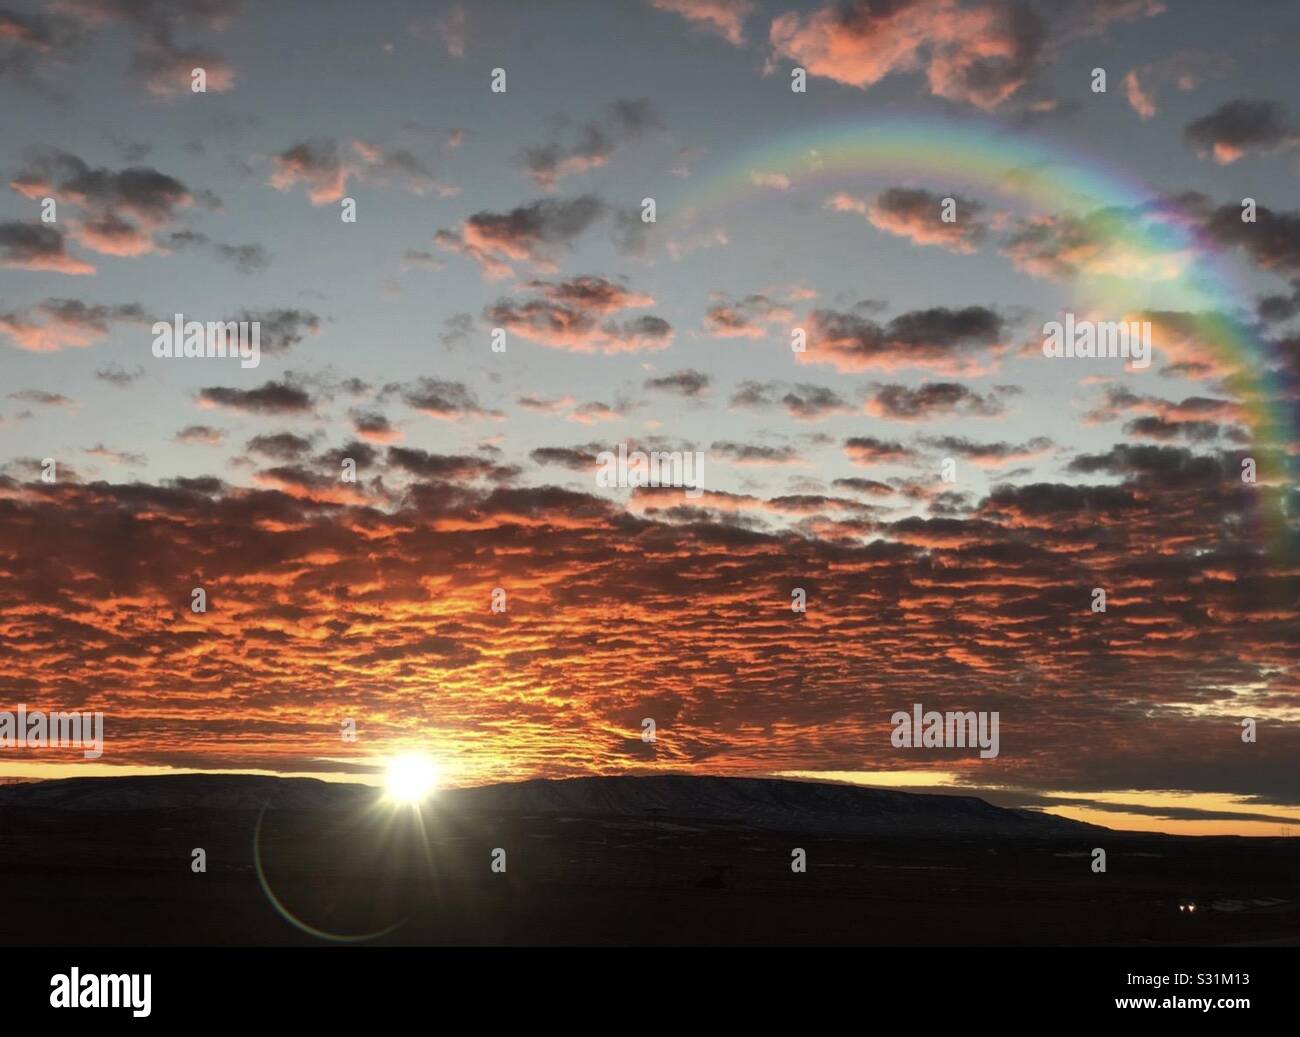 Das auf dem iPhone X aufgenommene Foto bei Sonnenuntergang Konnte diese kühlen Lichteffekte von der Sonne erhalten Stockfoto